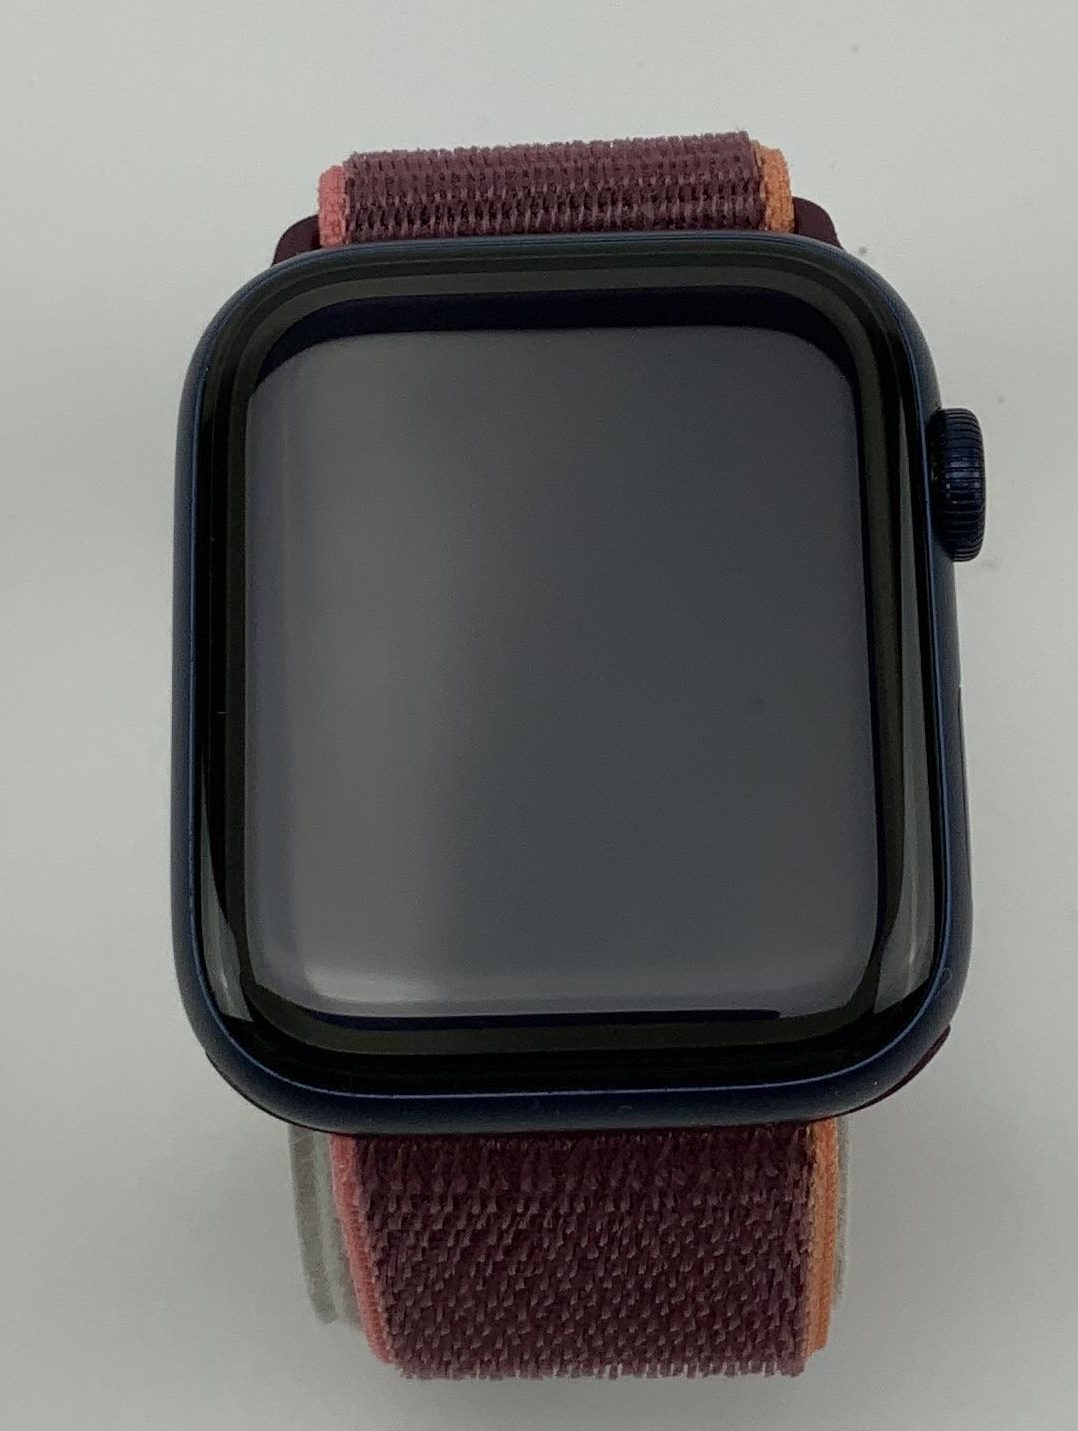 Watch Series 6 Aluminum Cellular (44mm), Blue, Bild 1